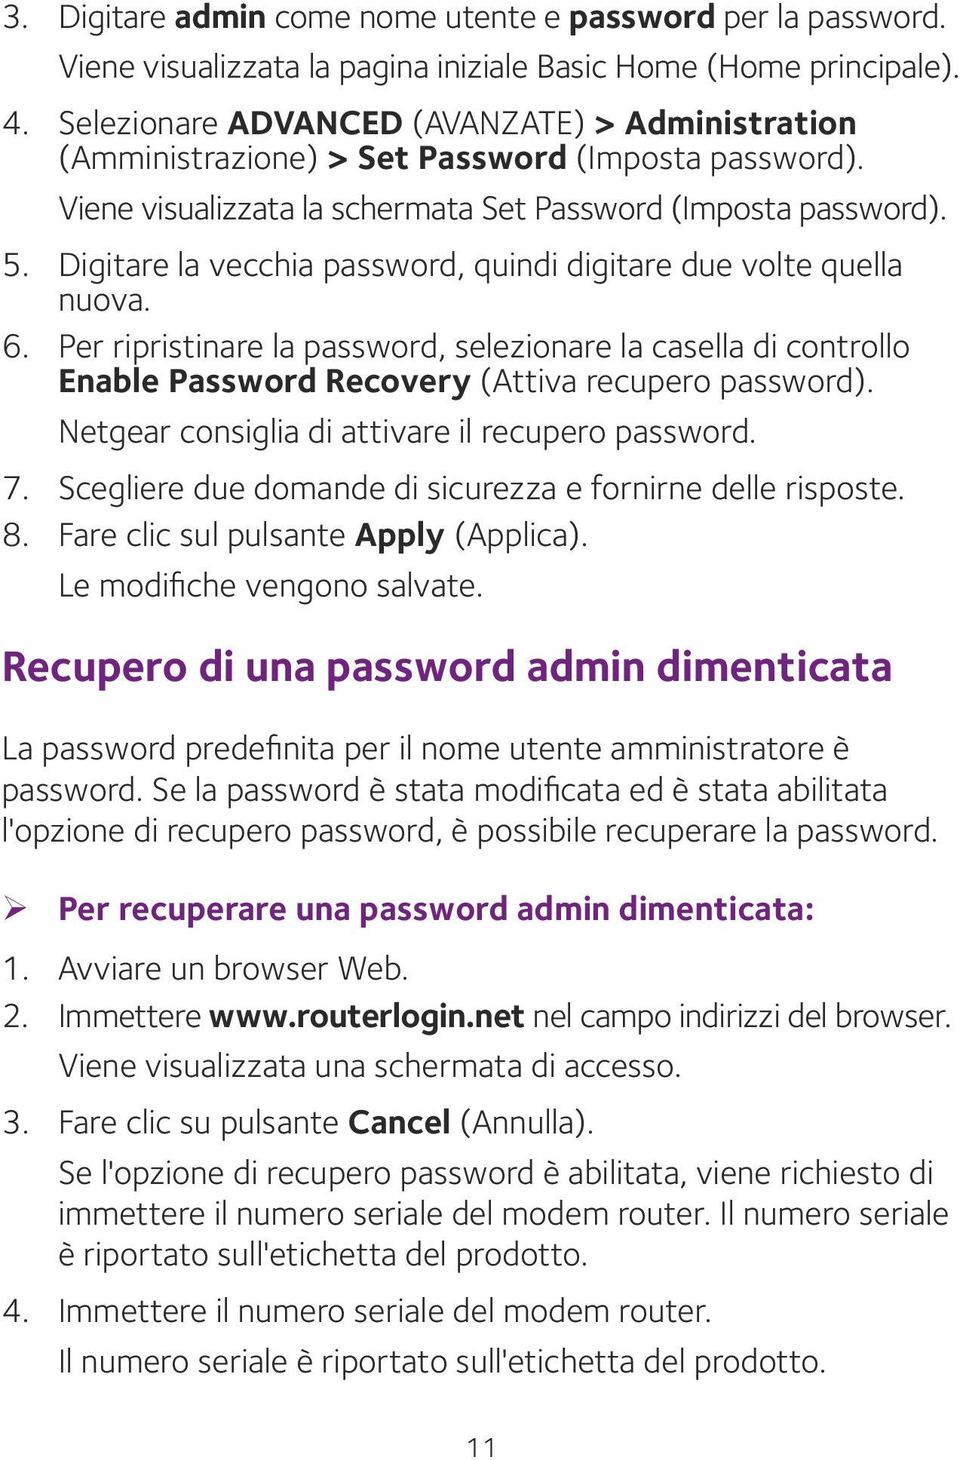 Digitare la vecchia password, quindi digitare due volte quella nuova. 6. Per ripristinare la password, selezionare la casella di controllo Enable Password Recovery (Attiva recupero password).